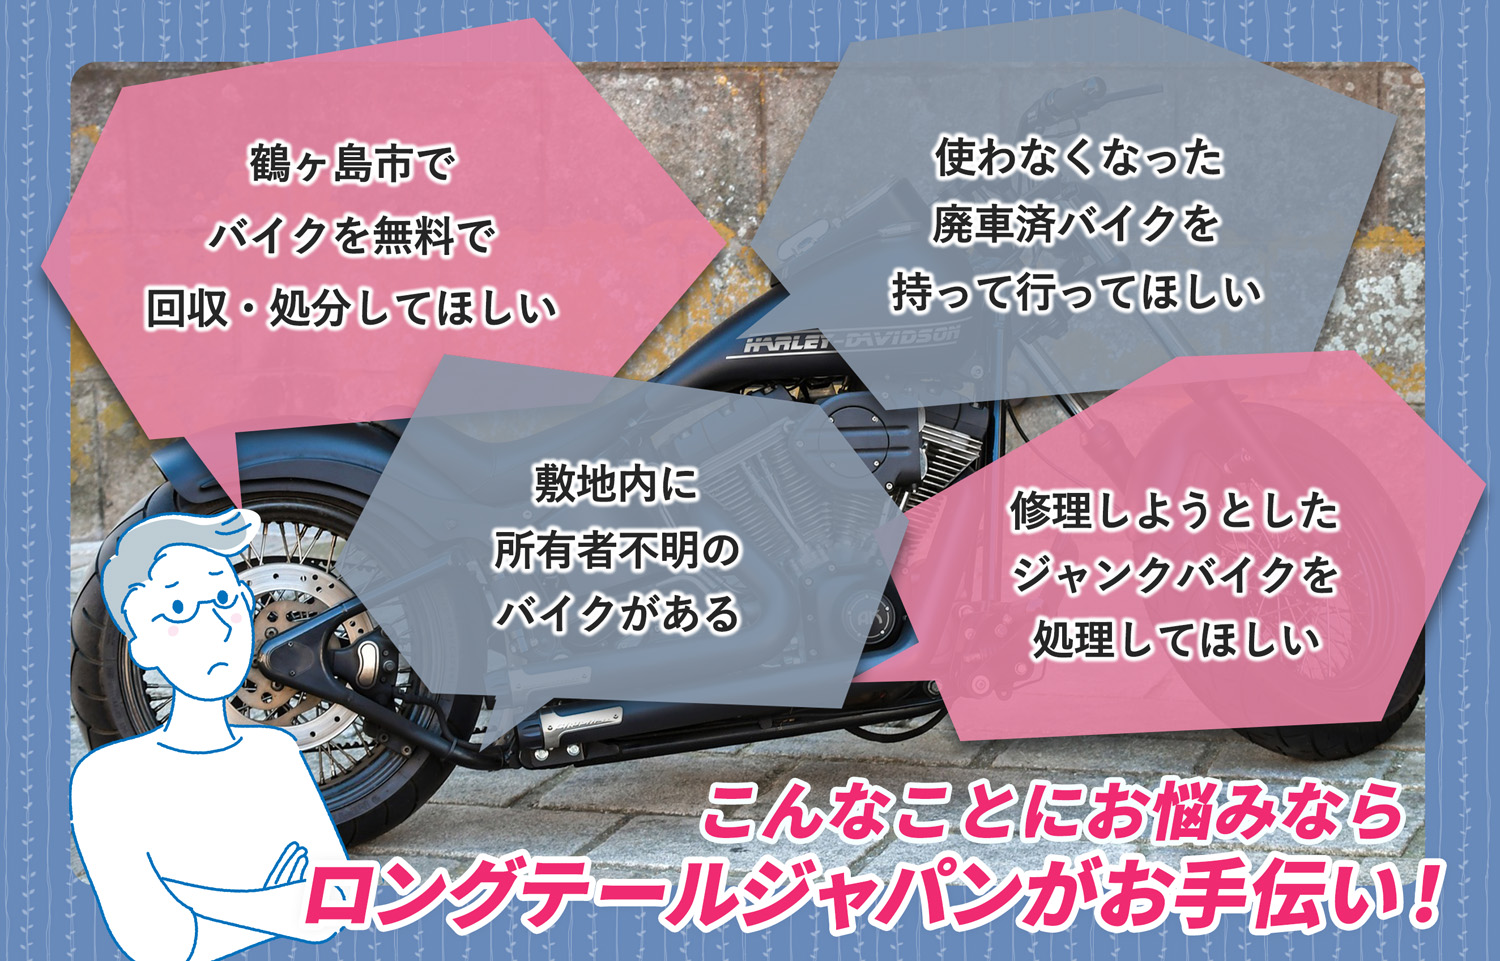 鶴ヶ島市でこんなバイクの処分にお困りでしたらバイク無料回収処分隊がお手伝いいたします。